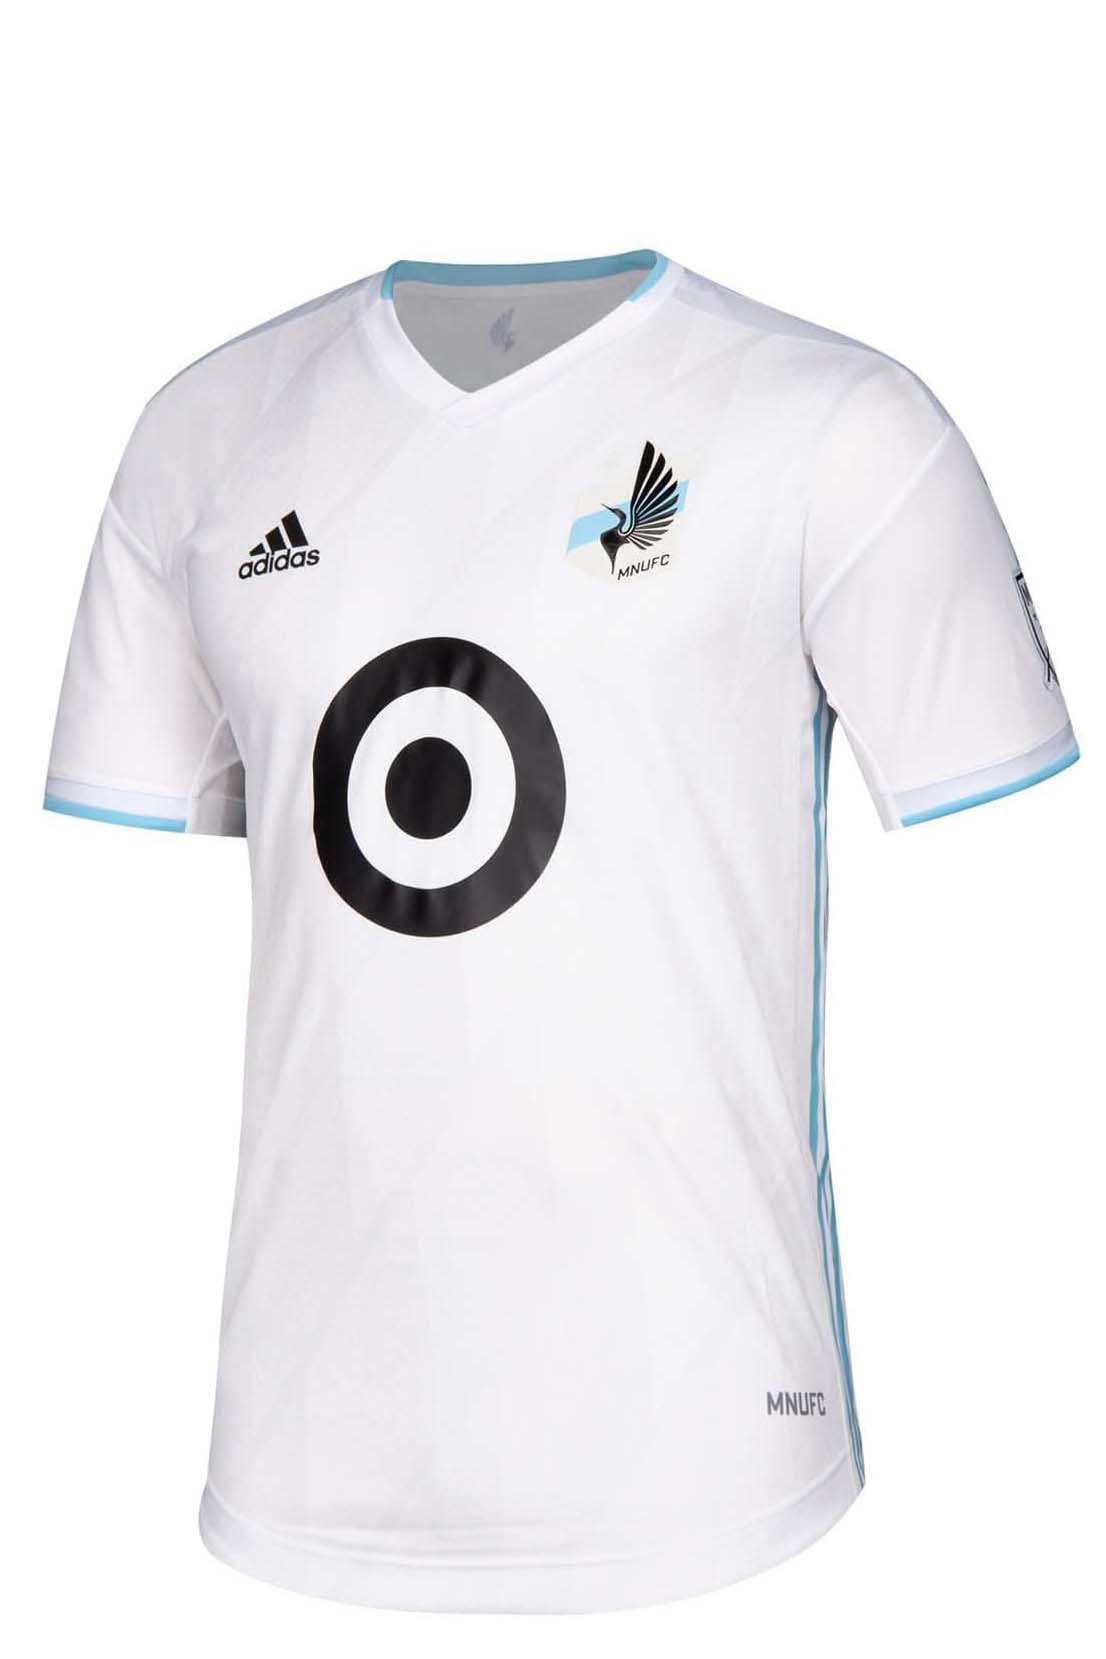 adidas MLS maillot